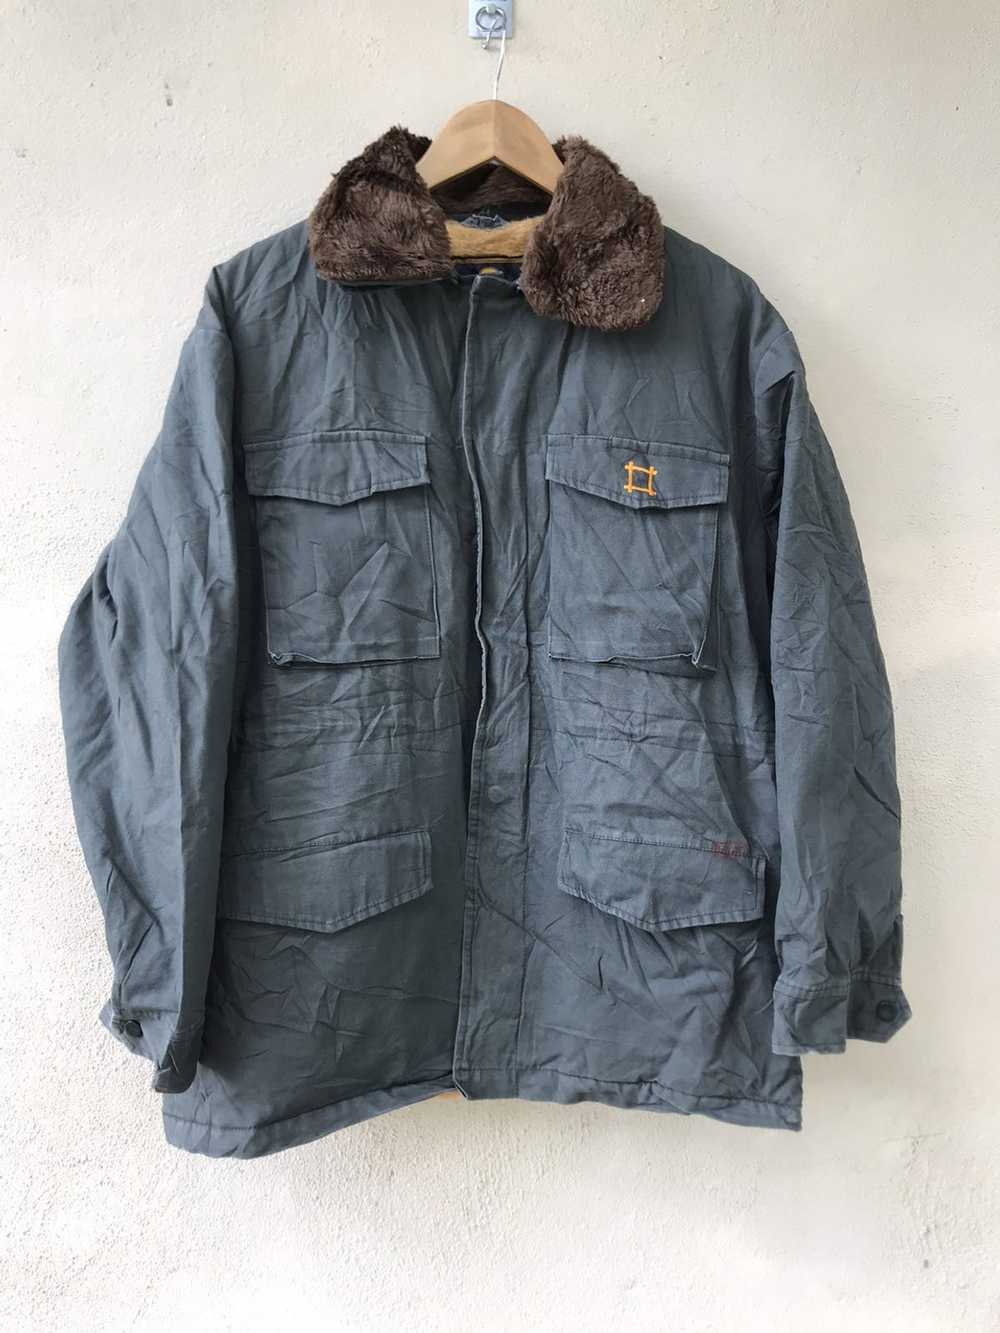 Wool Streetwear Jacket 'NKP110' – Japan-Clothing